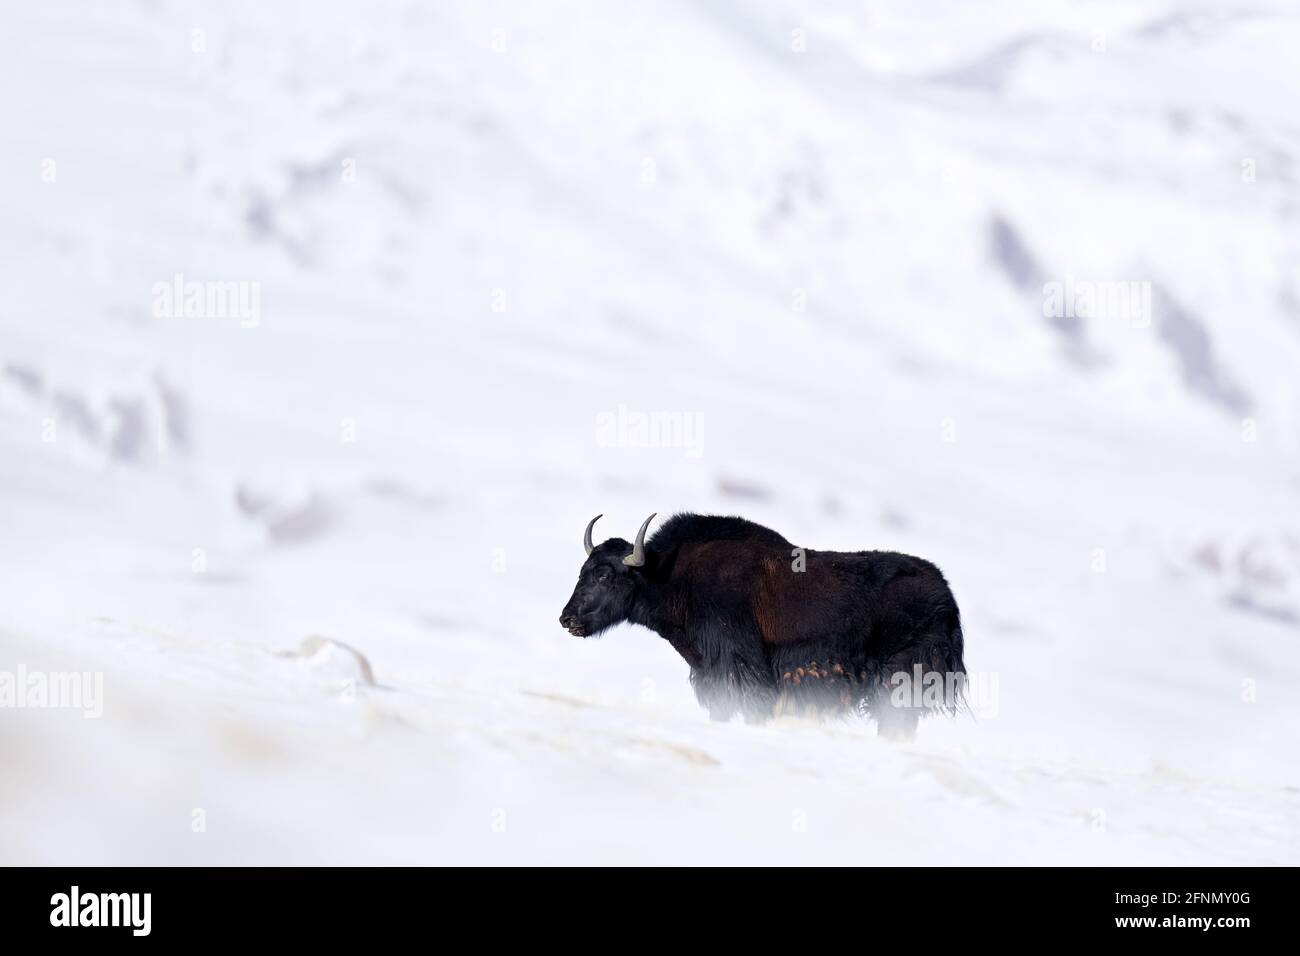 Yak sauvage, Bos mutus, grand bovid originaire de l'Himalaya, montagne d'hiver, lac TSO-Kar, Ladakh, Inde. Yal du plateau tibétain, dans la neige Banque D'Images